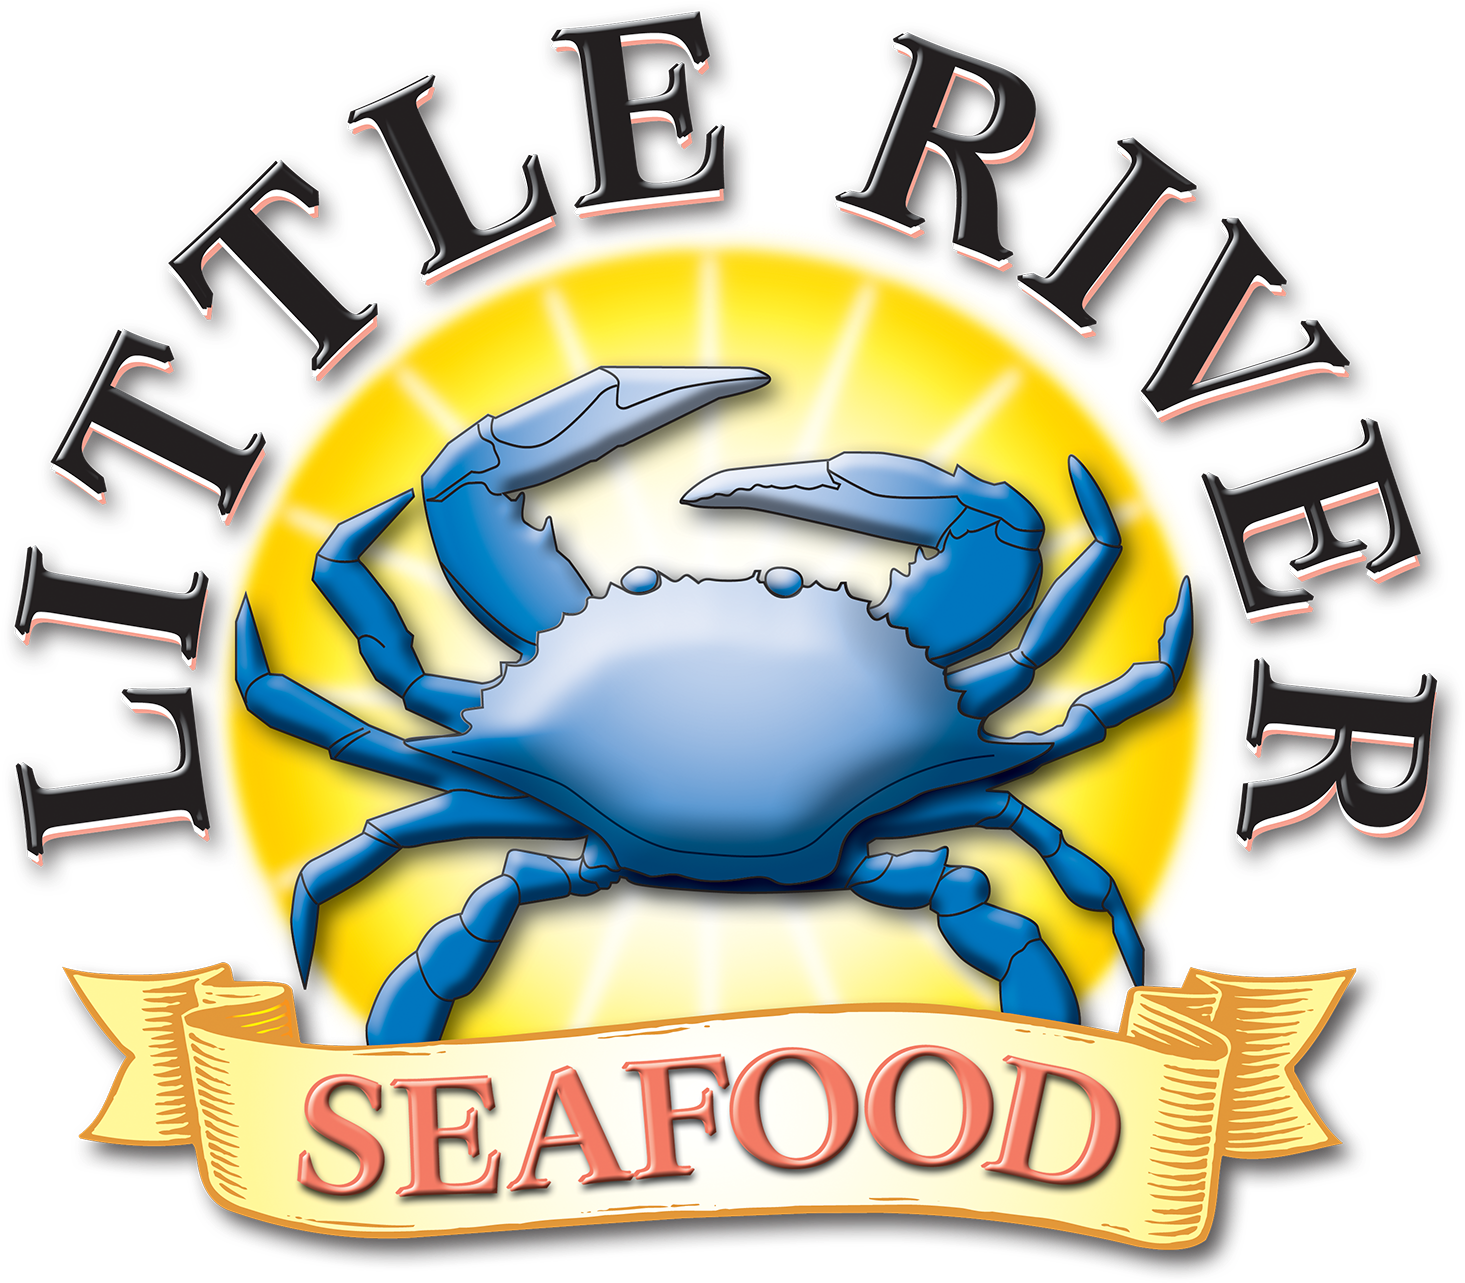 Little River Seafood Inc - Little River Seafood Inc (1650x1500)